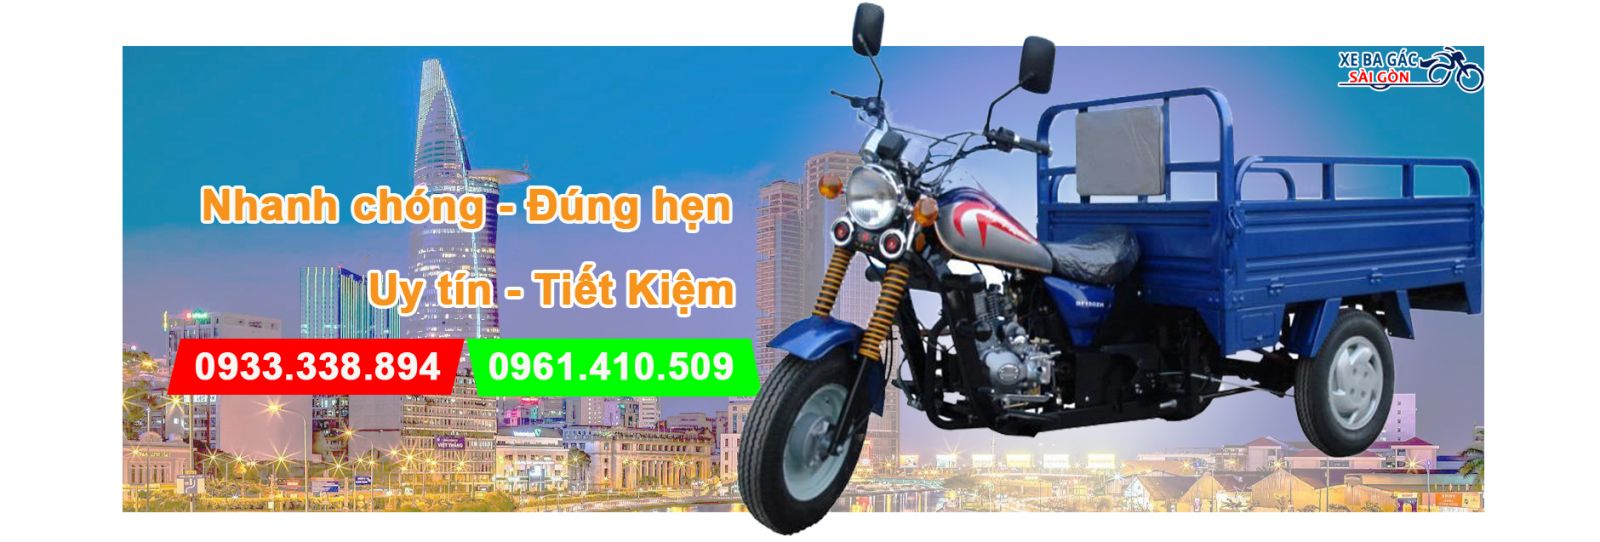 Xe ba gác chở thuê quận Tân Bình giá rẻ